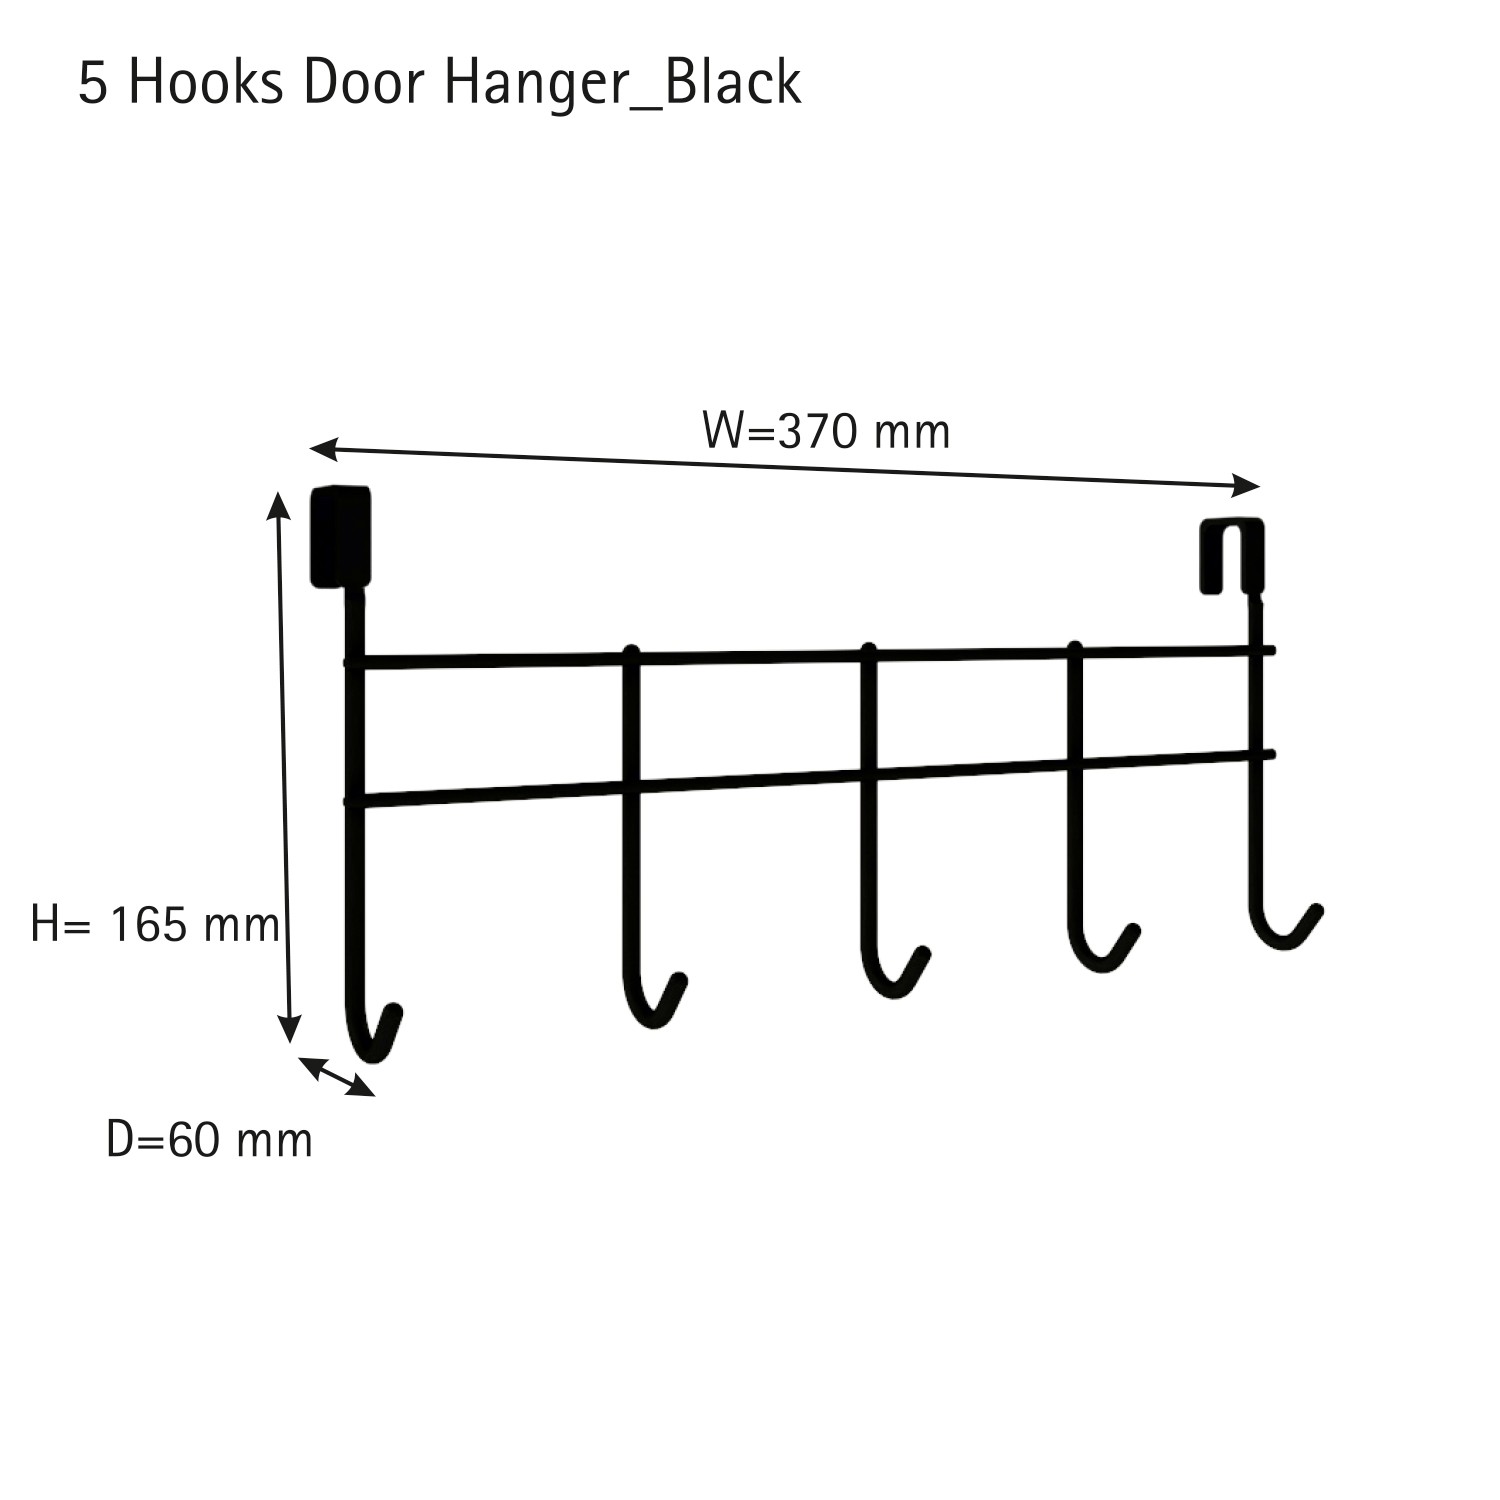 HENGER 6 leg hanger Door Hanger Price in India - Buy HENGER 6 leg hanger  Door Hanger online at